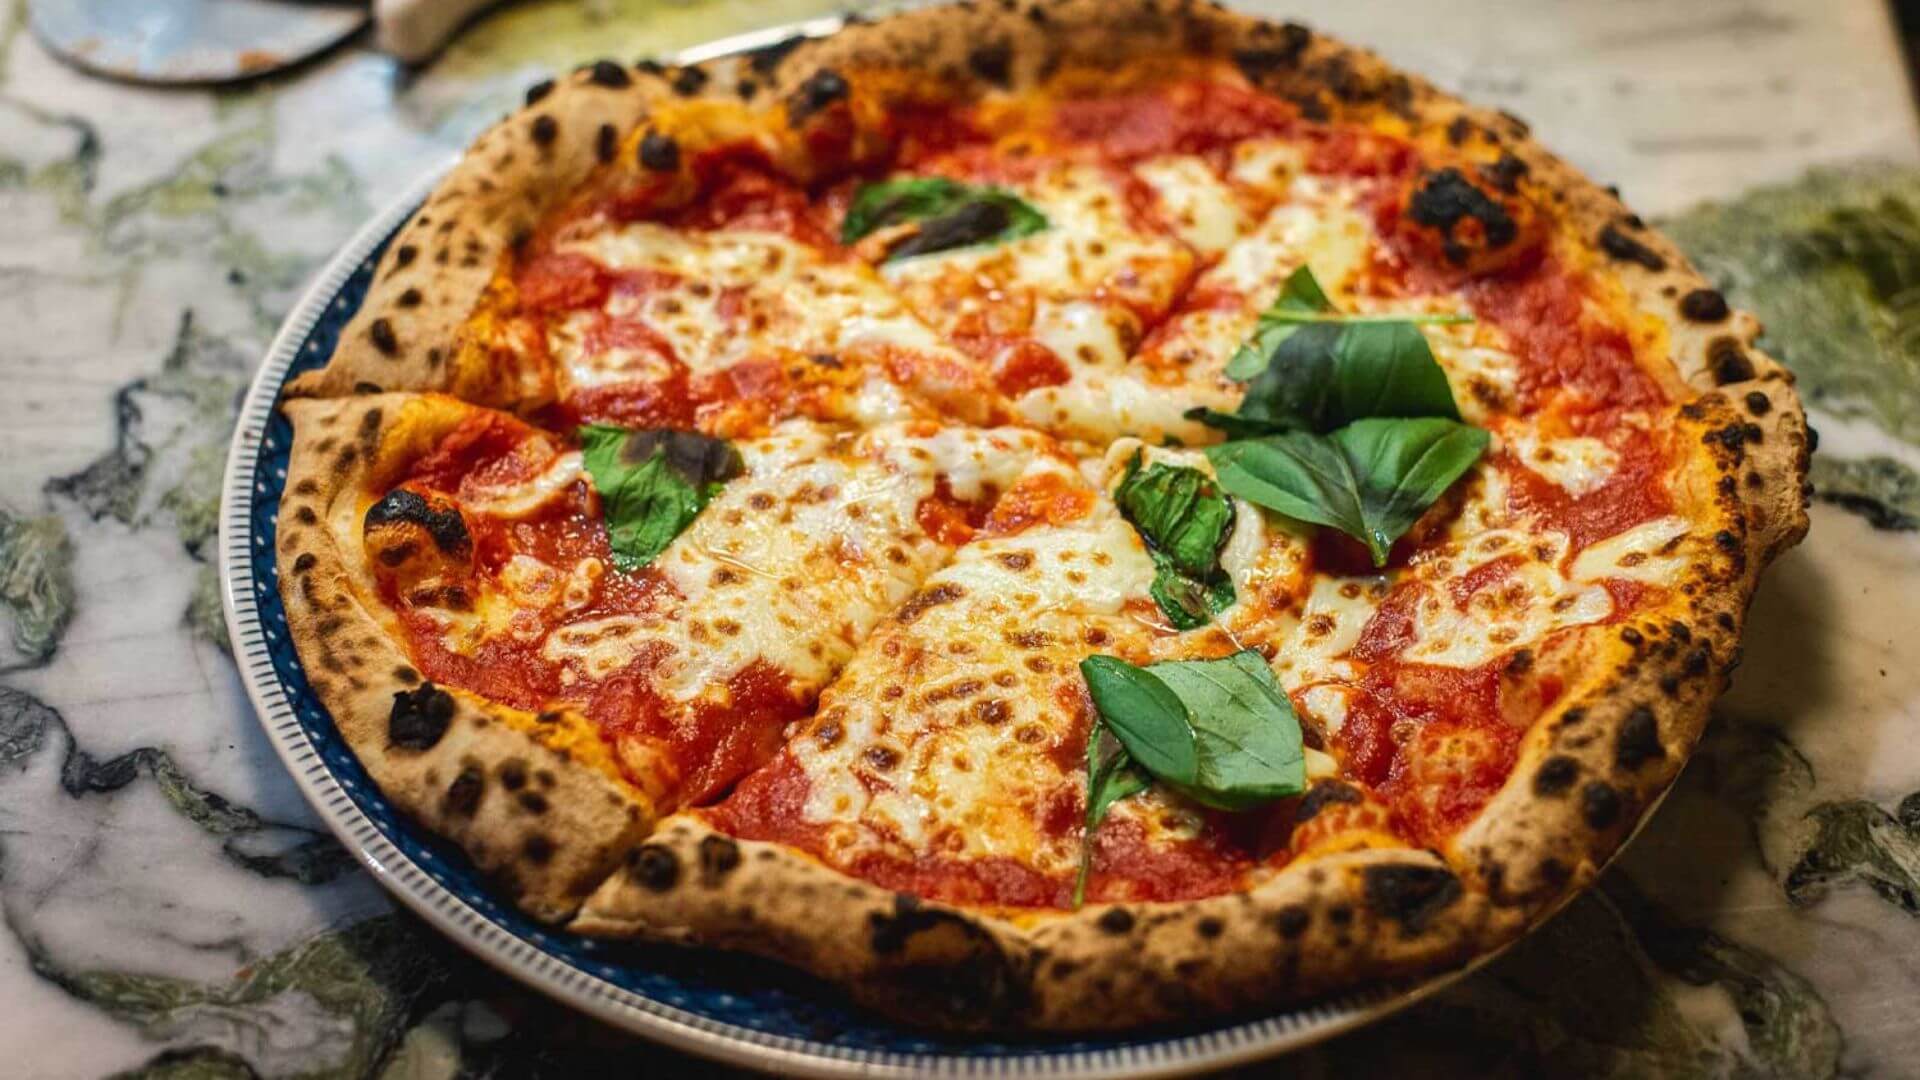 napolitansk pizza er laget med bare noen få ingredienser, inkludert San Marzano-tomat, fersk mozzarella ost og ferske urter som basilikum